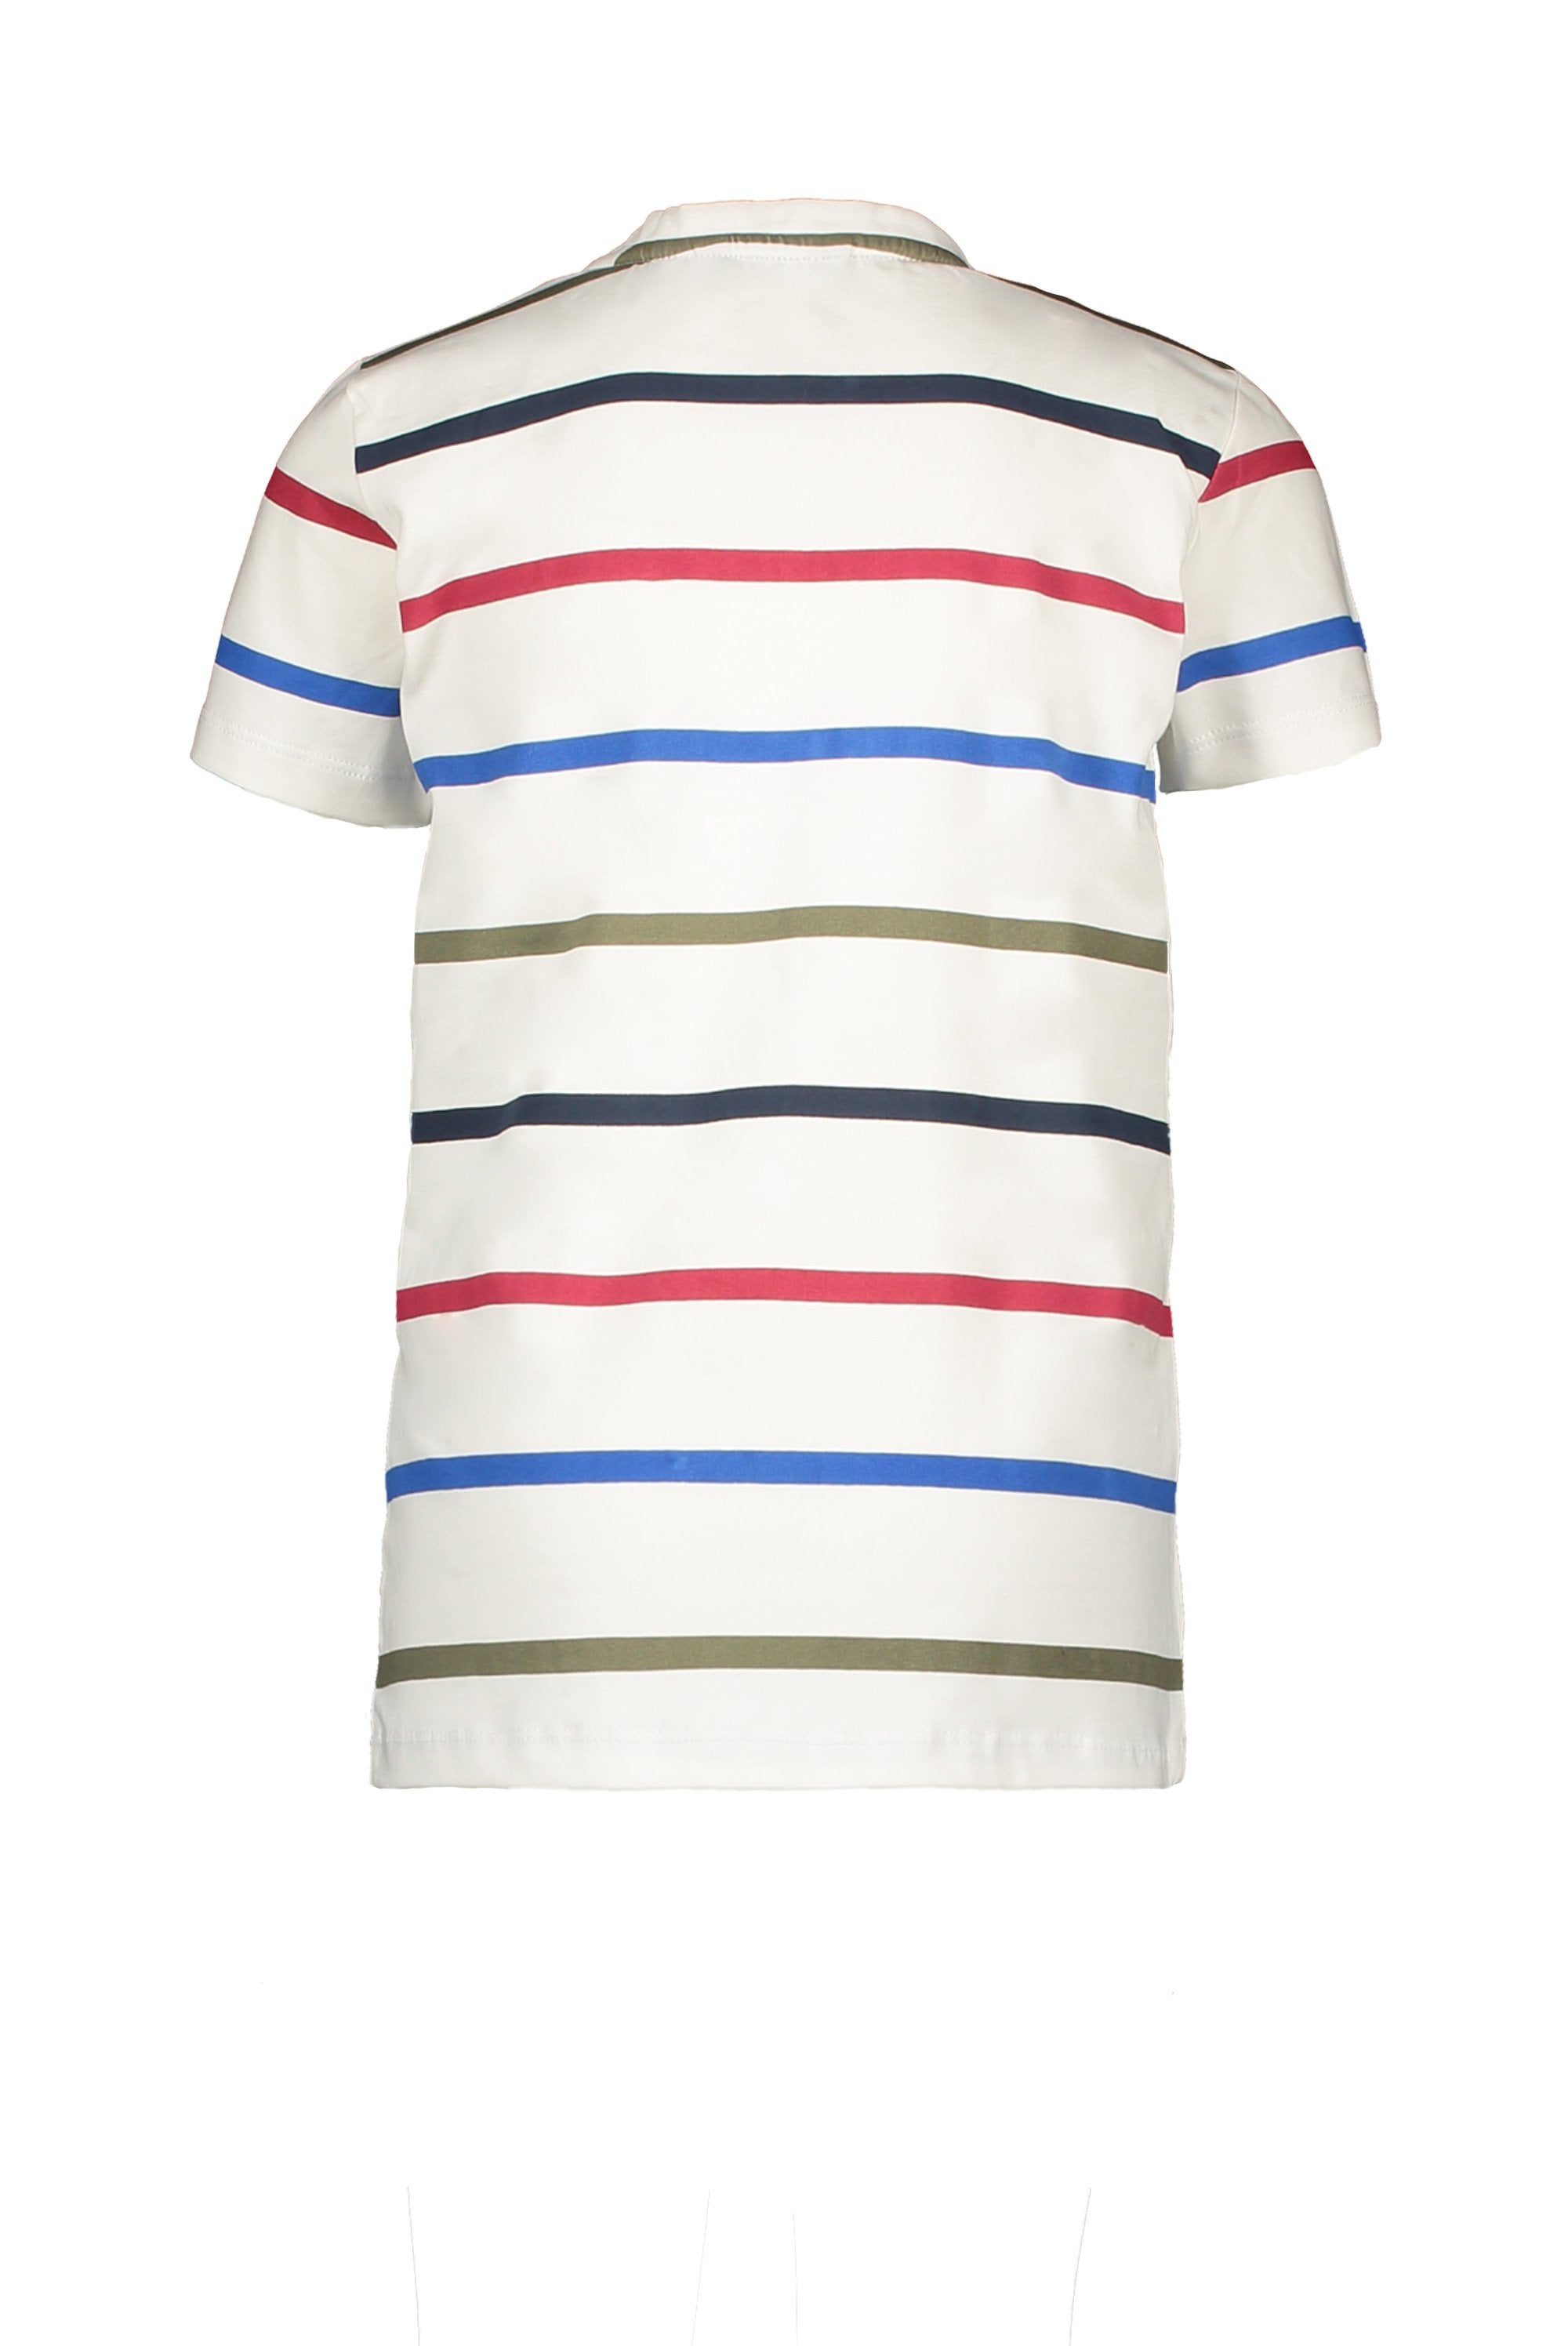 Jongens T-Shirt Stripe van Moodstreet in de kleur Warm White in maat 122/128.